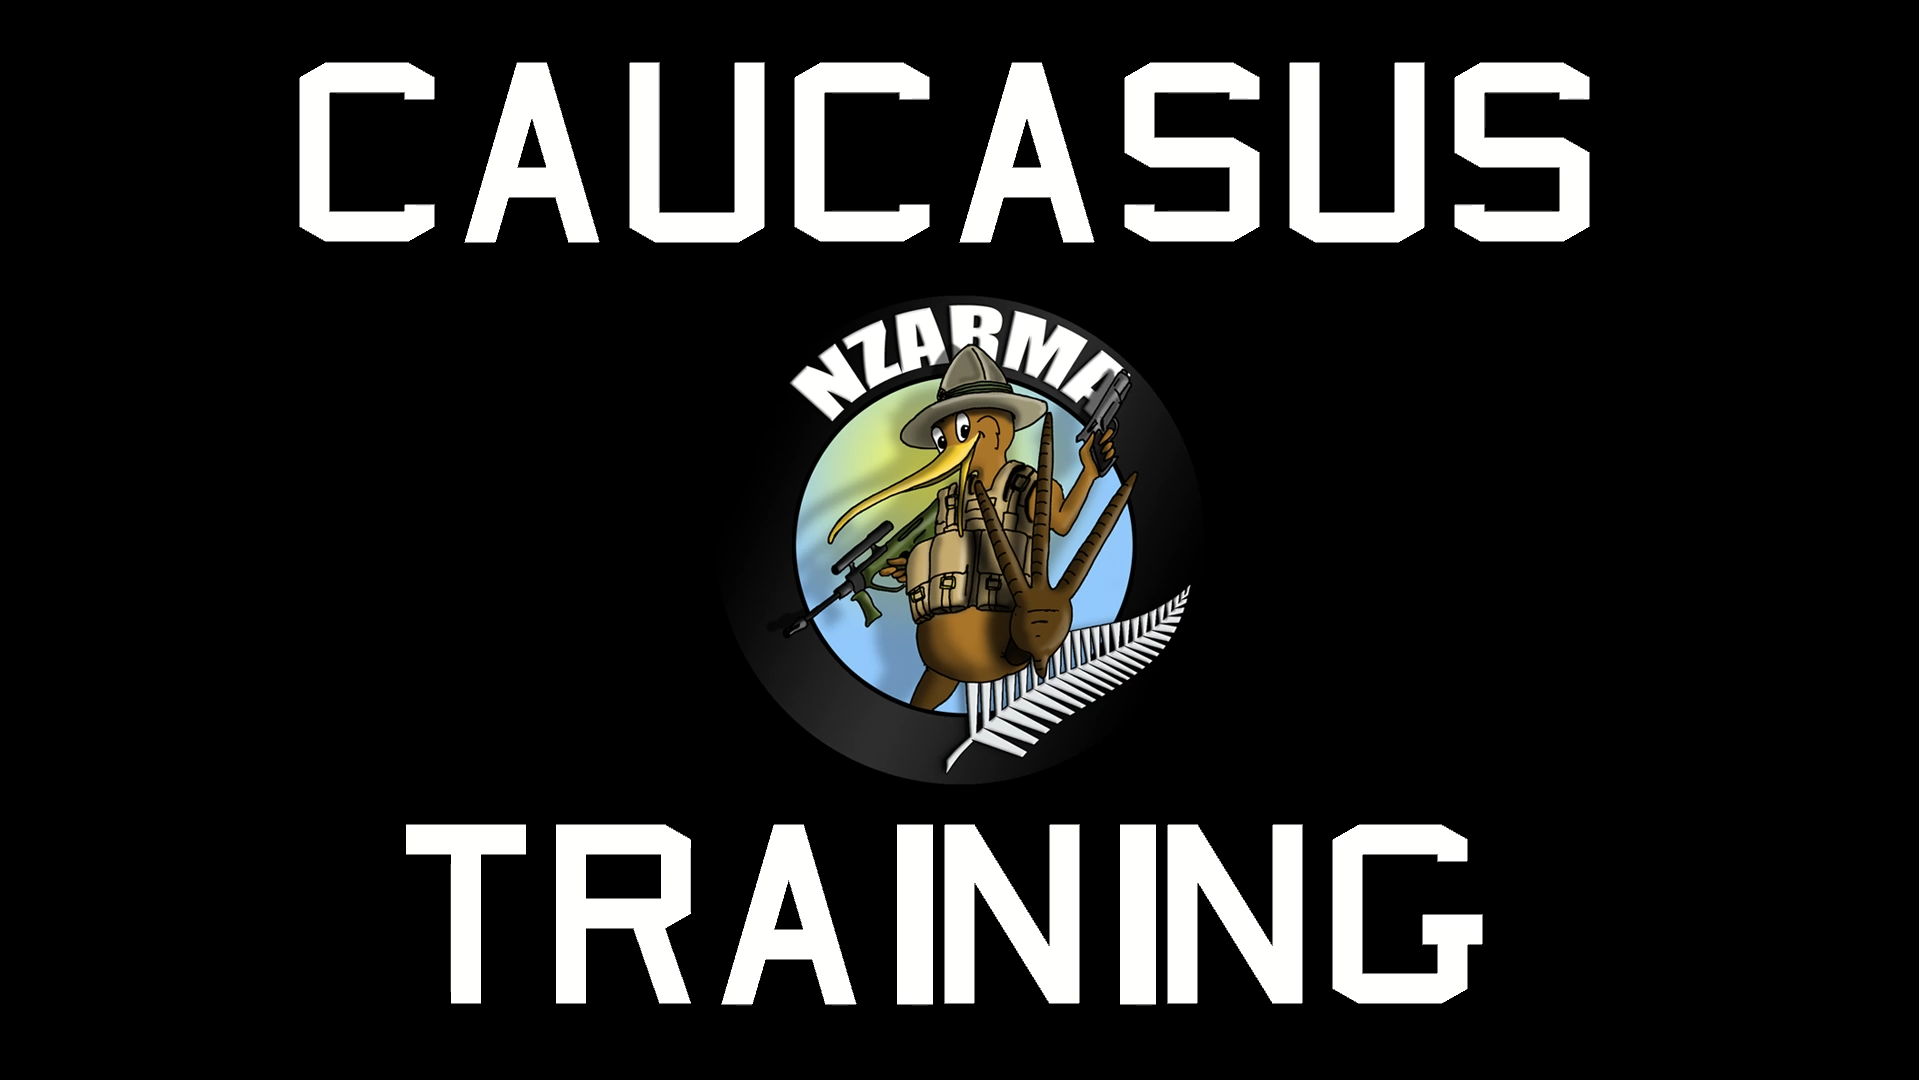 Caucasus Training v12 - by NZArmA